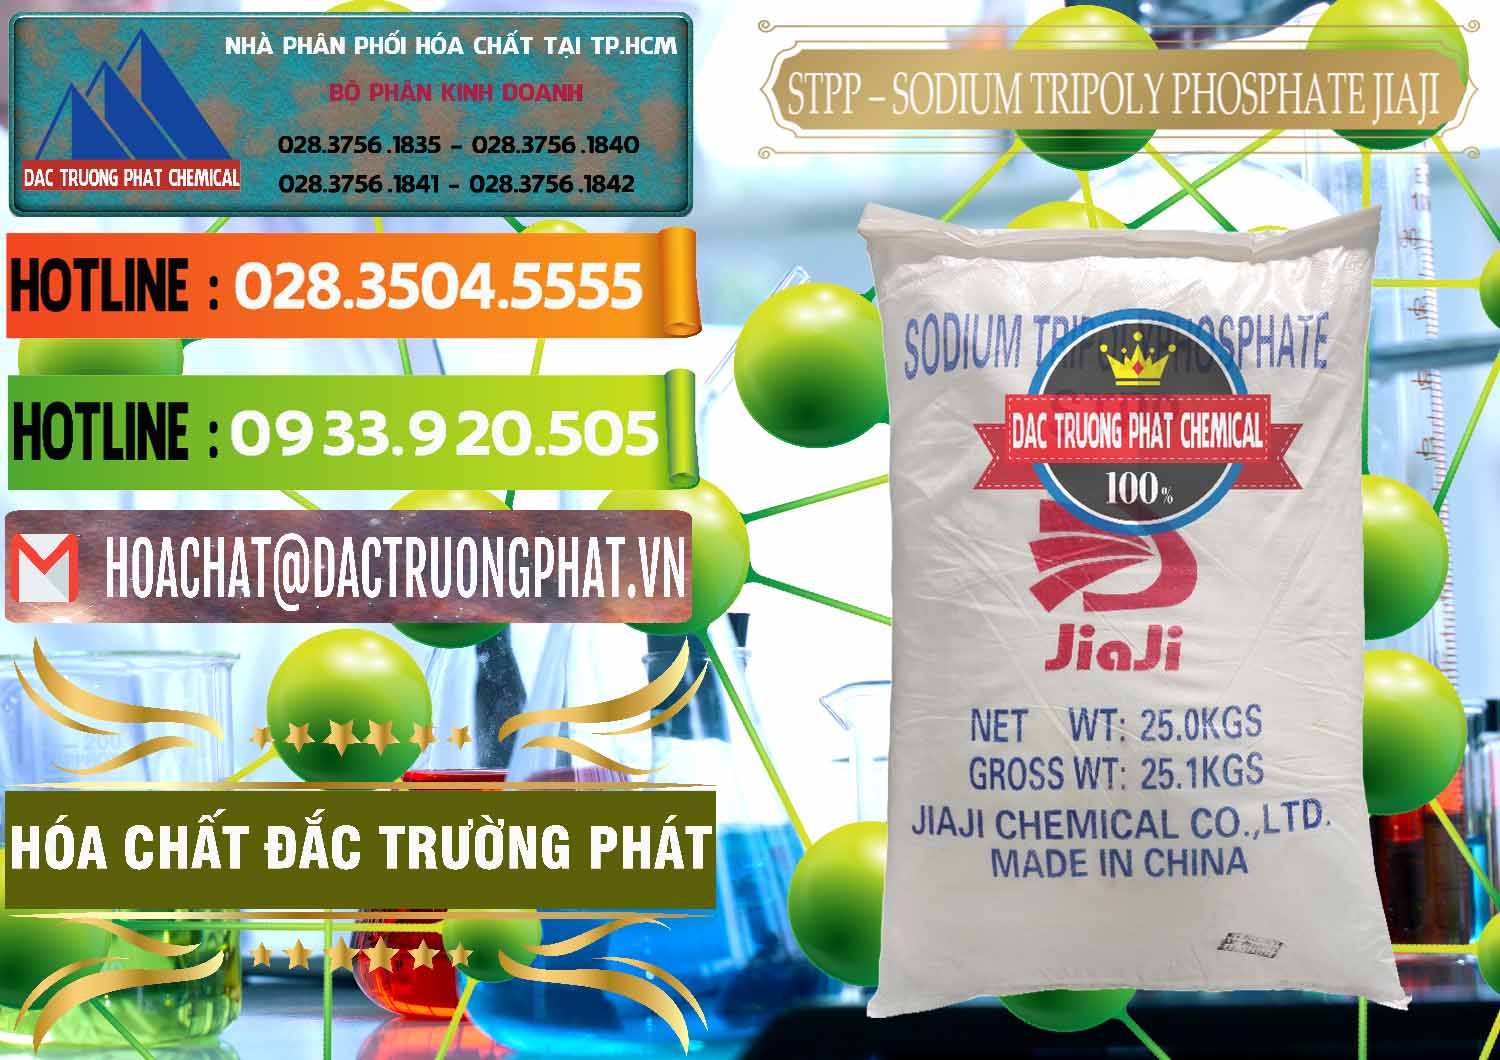 Cty chuyên nhập khẩu ( bán ) Sodium Tripoly Phosphate - STPP Jiaji Trung Quốc China - 0154 - Cung cấp và phân phối hóa chất tại TP.HCM - cungcaphoachat.com.vn